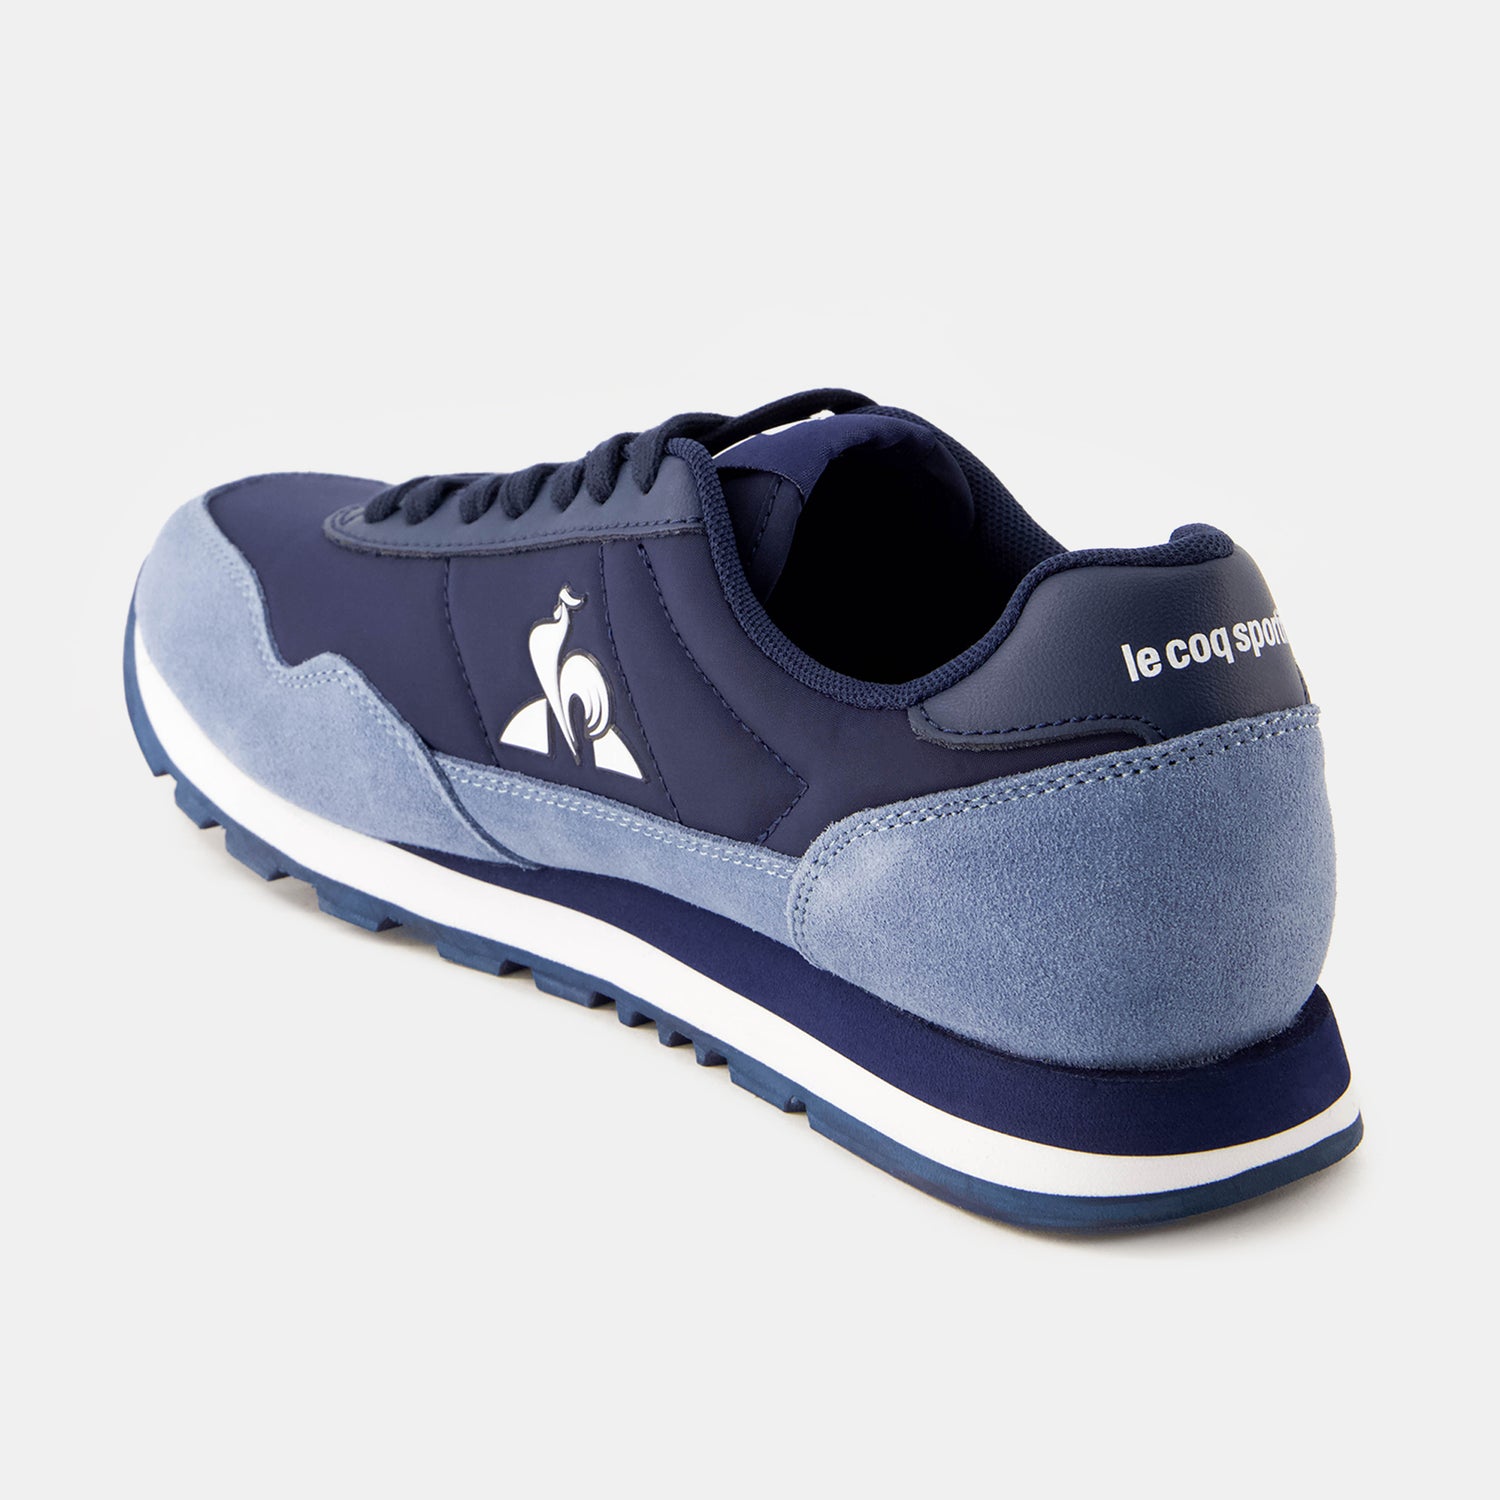 2410503-ASTRA_2 dress blue/ ashley blue  | Shoes ASTRA 2 Unisex